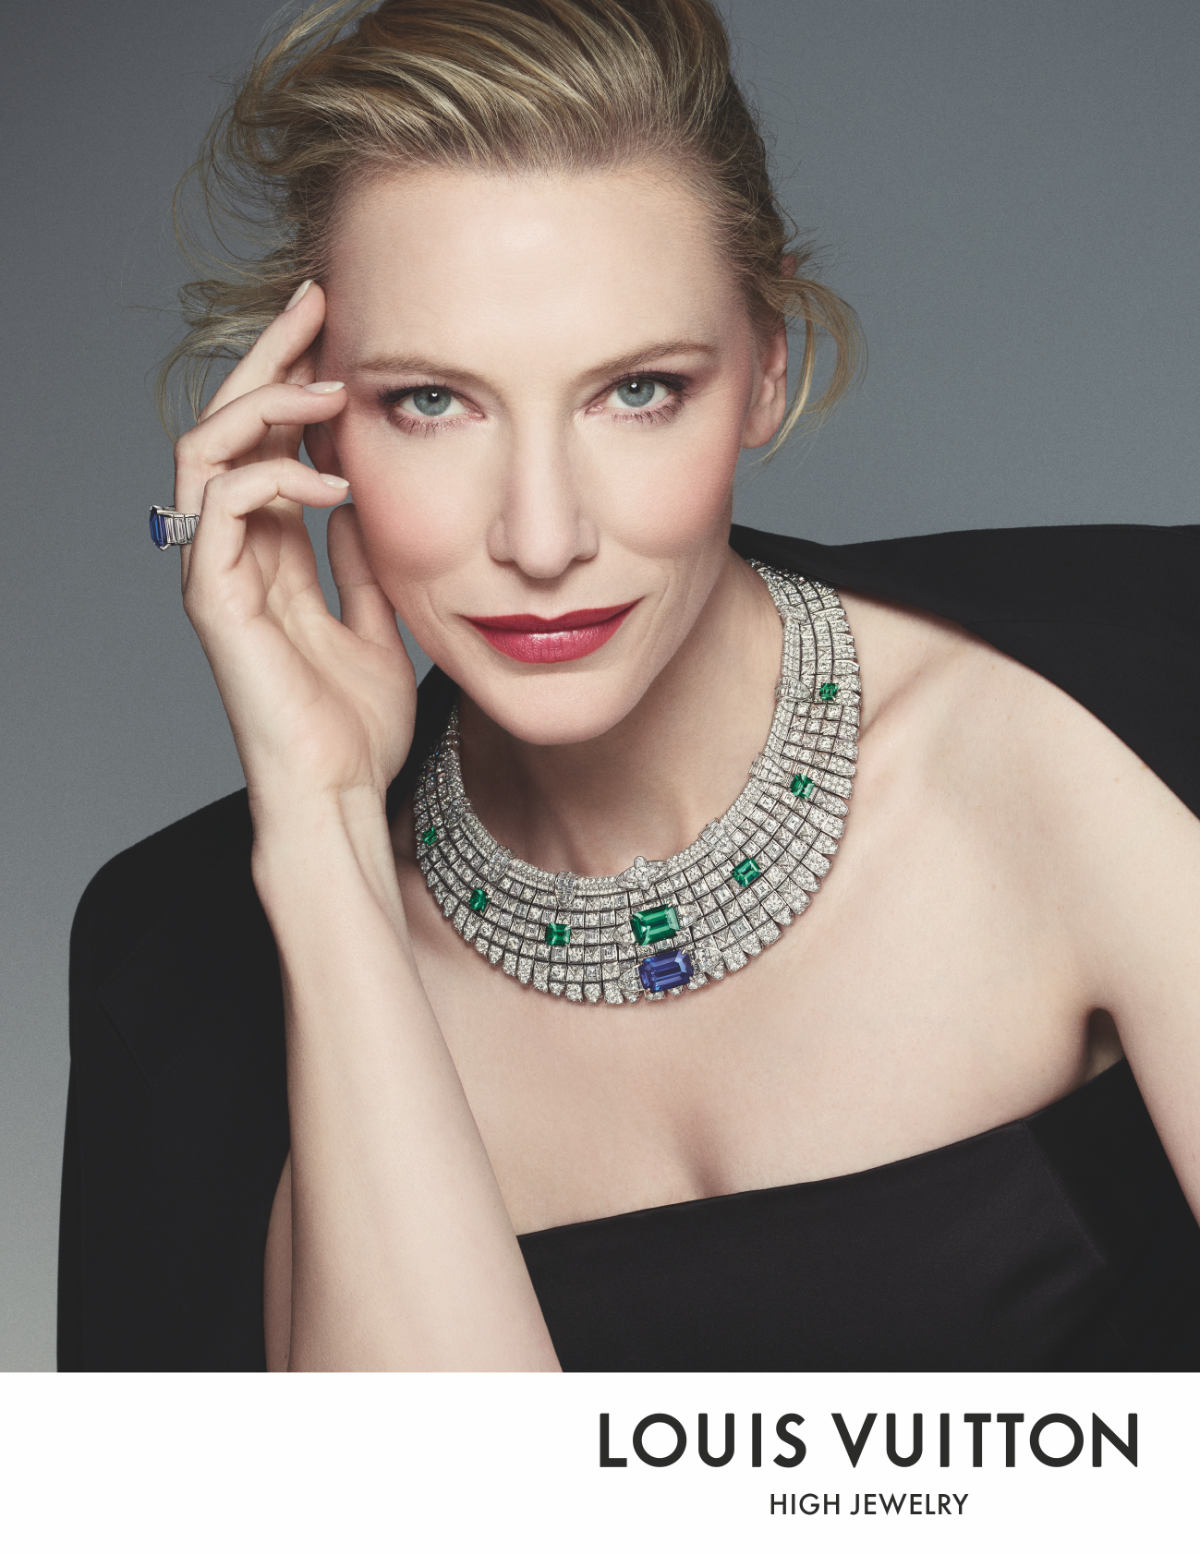 Louis Vuitton: Louis Vuitton Announced Cate Blanchett As Its